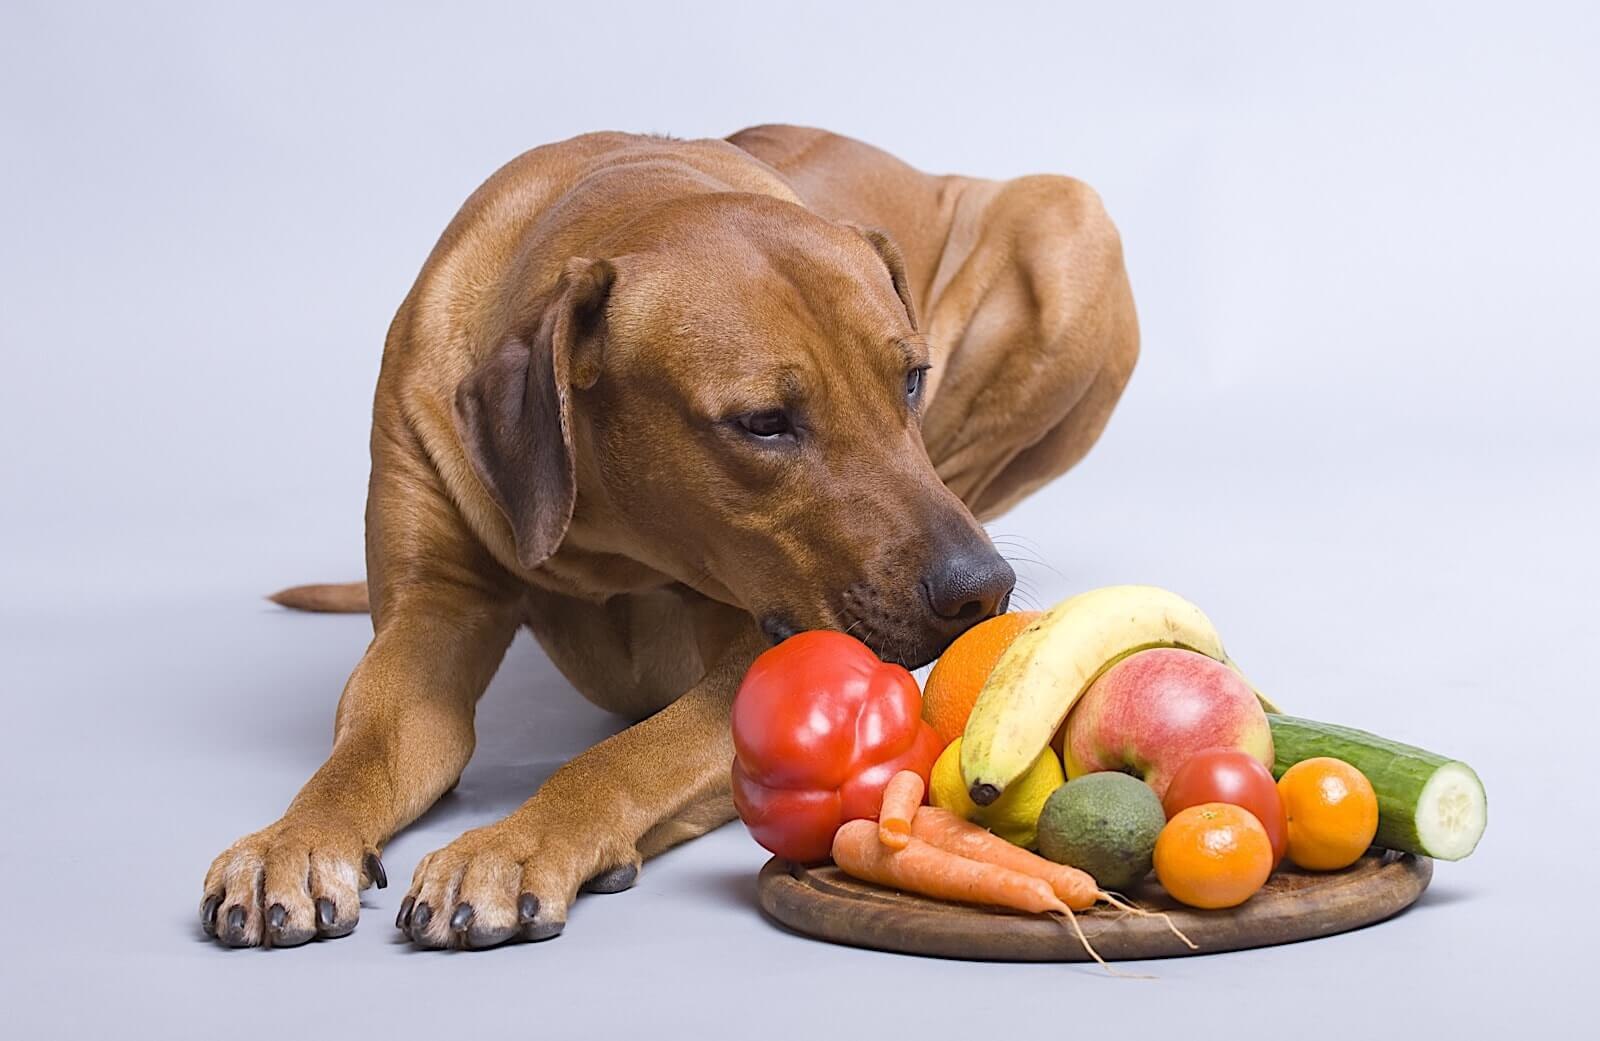 Редиска собаке. Еда для животных. Питание собак. Еда для собак. Собака и фрукты.